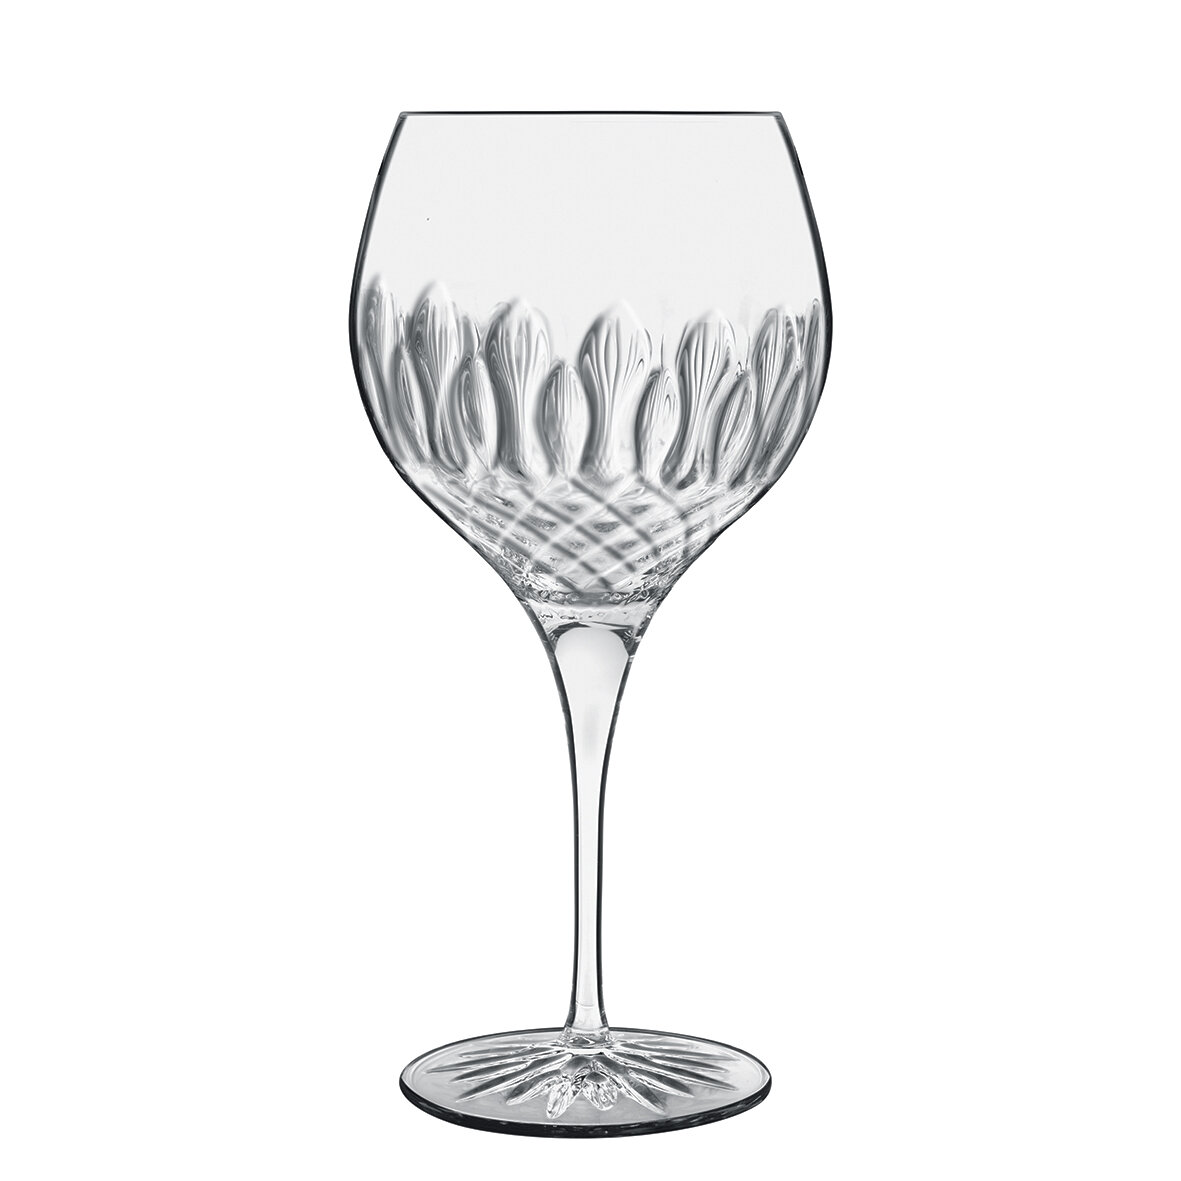 Luigi Bormioli Diamante 7.5oz Champagne/Prosecco Glasses Set of 4